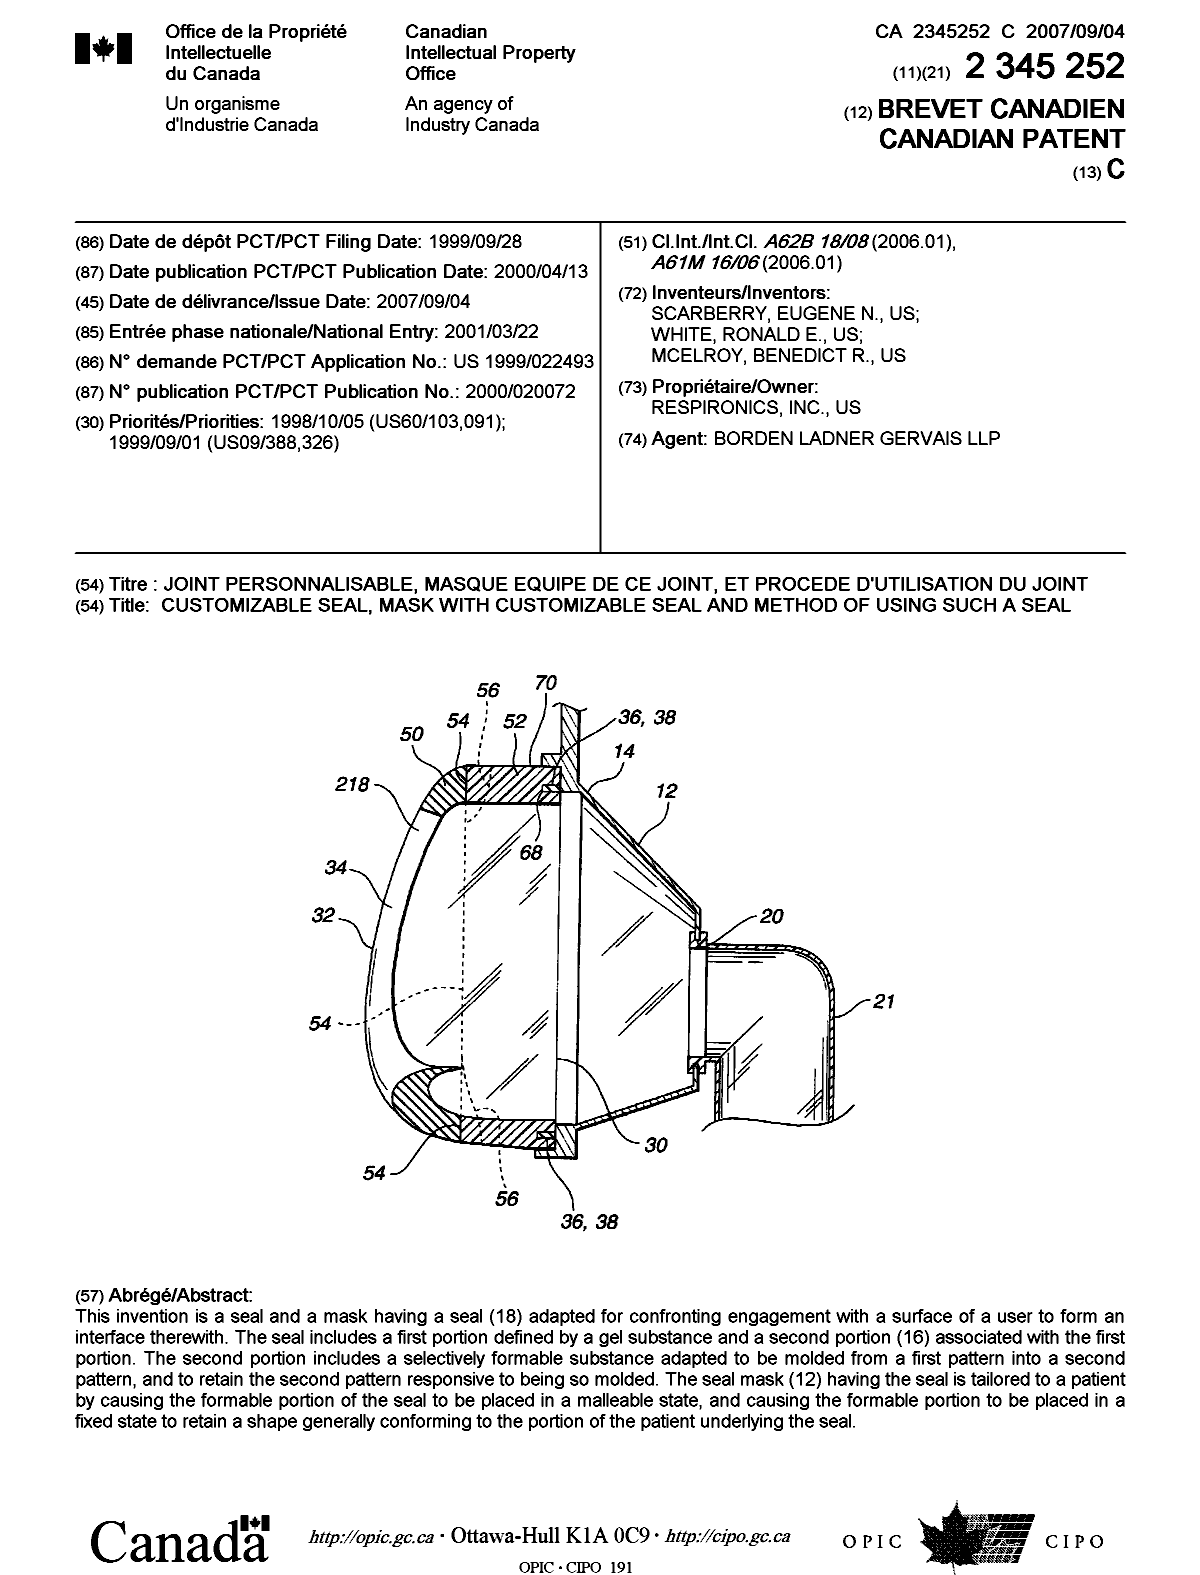 Document de brevet canadien 2345252. Page couverture 20070809. Image 1 de 1